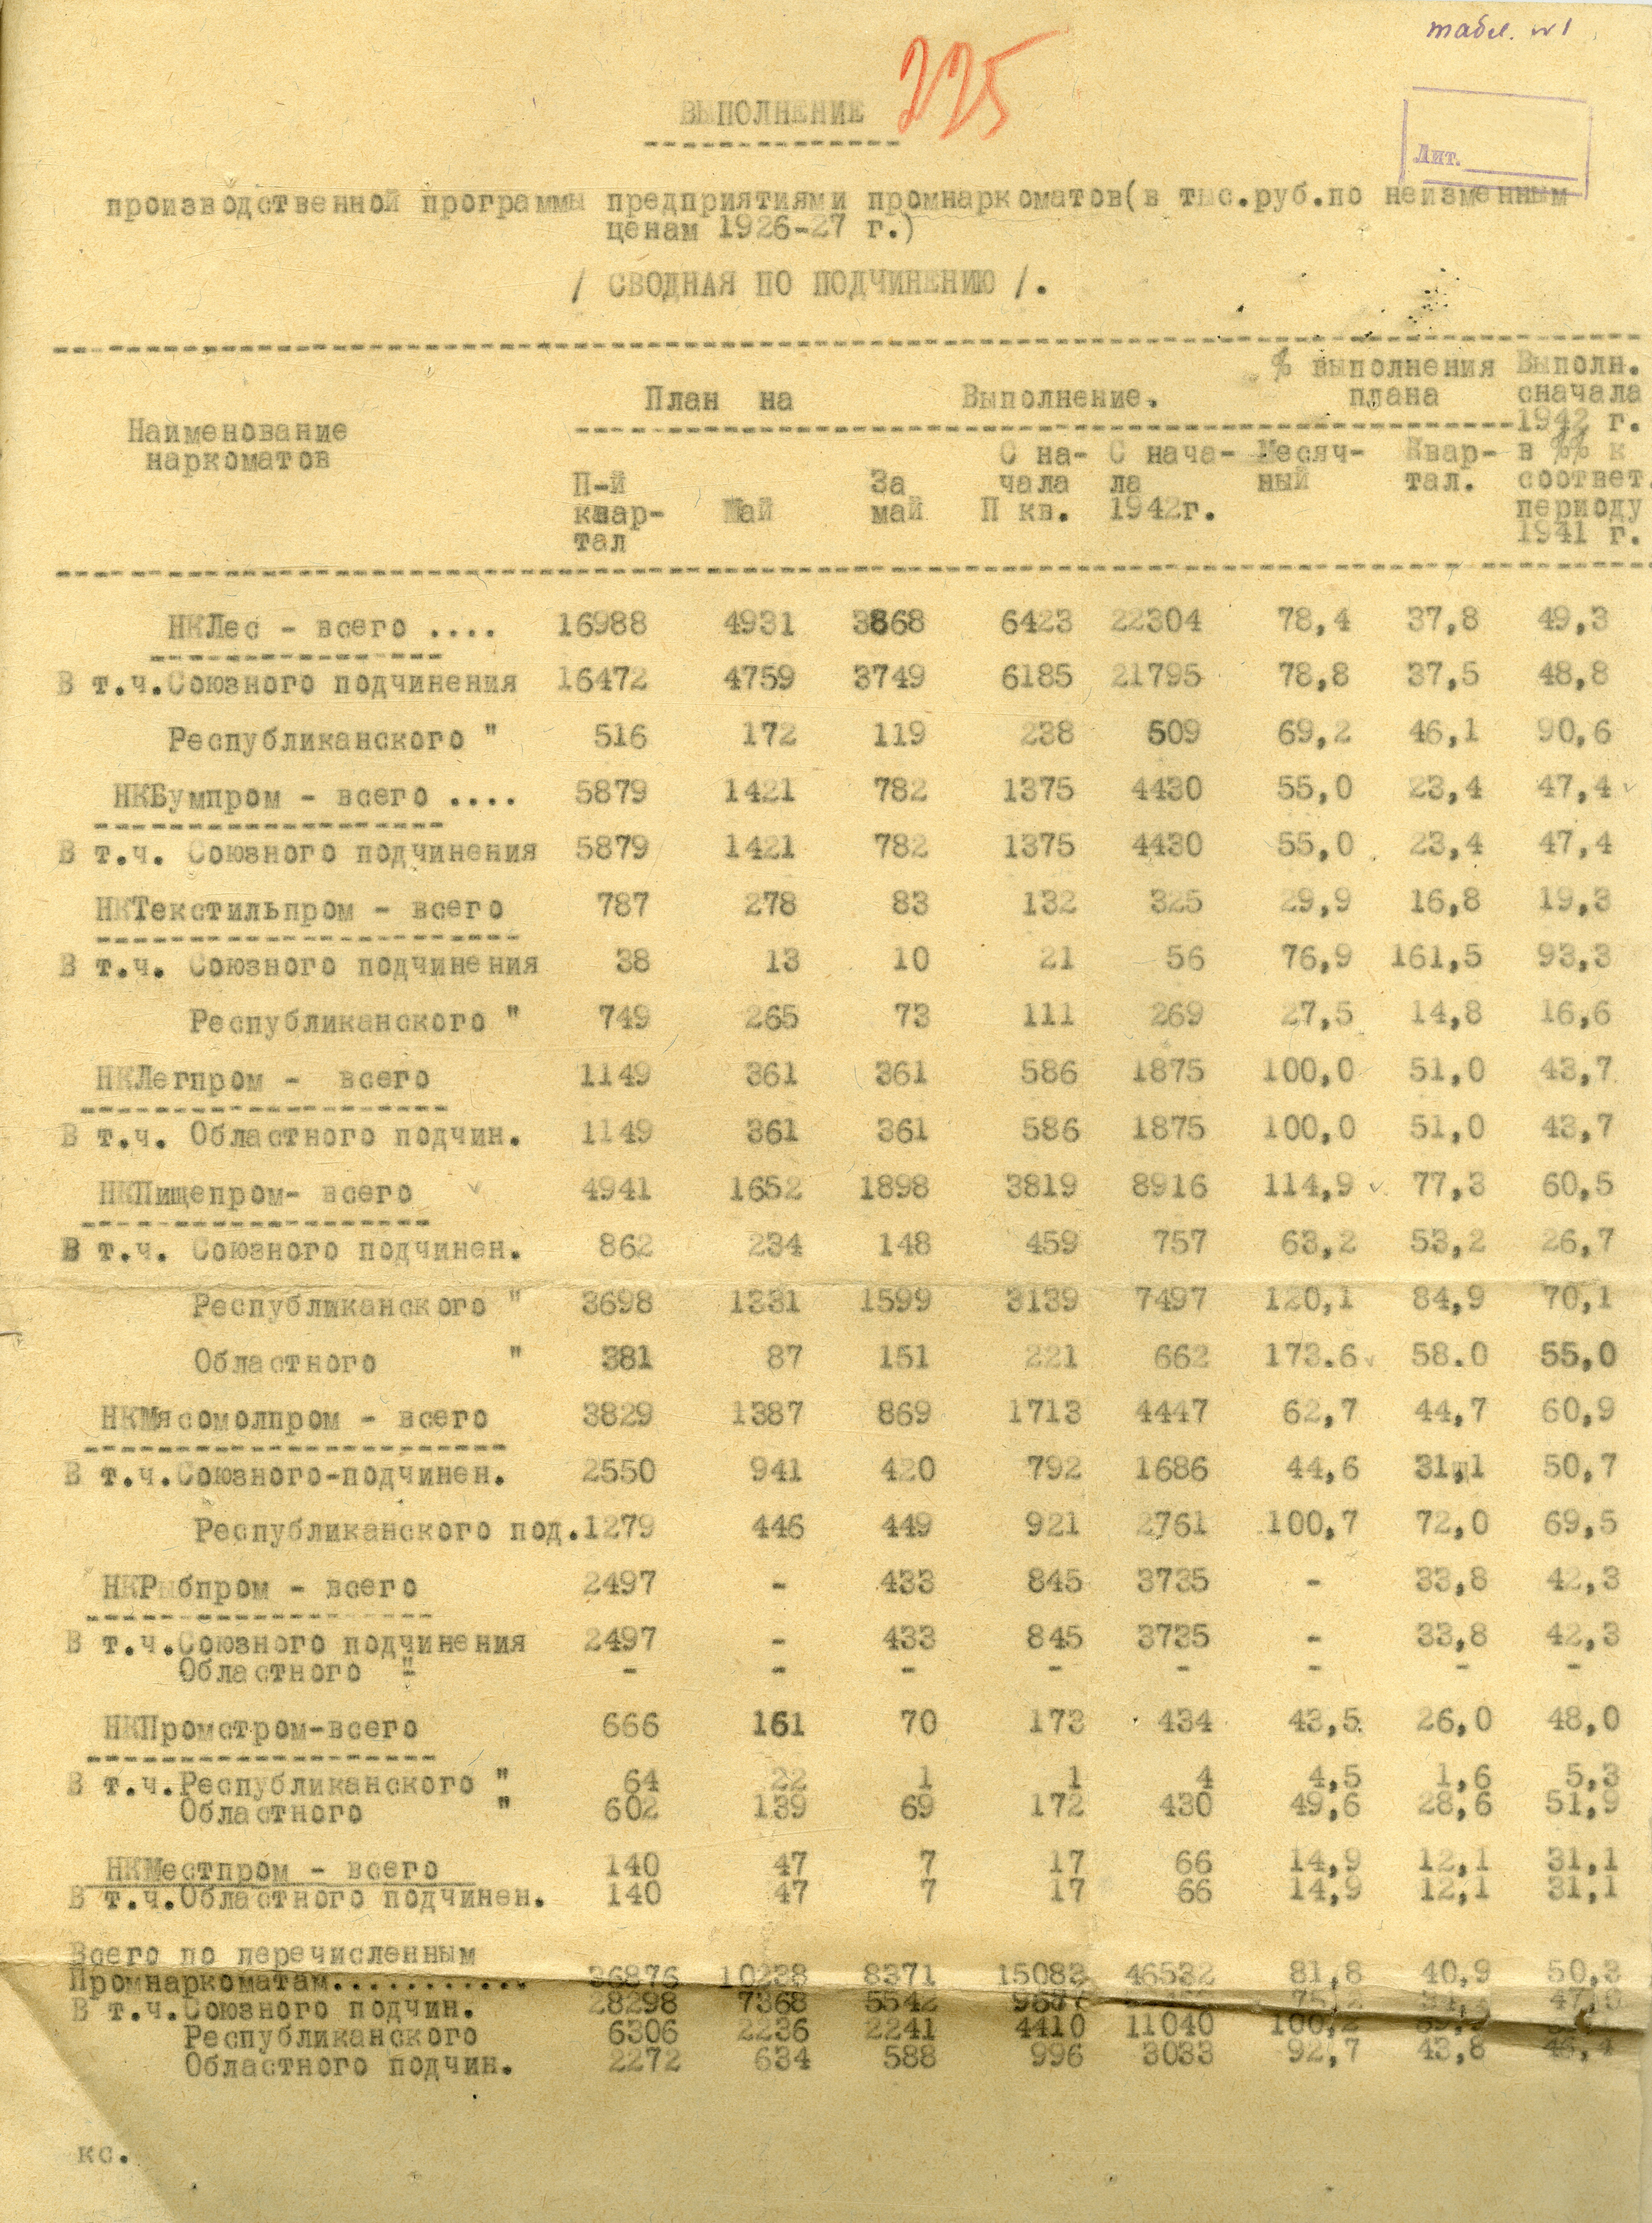 Выполнение производственной программы предприятиями промнаркоматов в 1942 г. ГААО. Ф. 2063. Оп. 9. Д. 41. Л. 225.